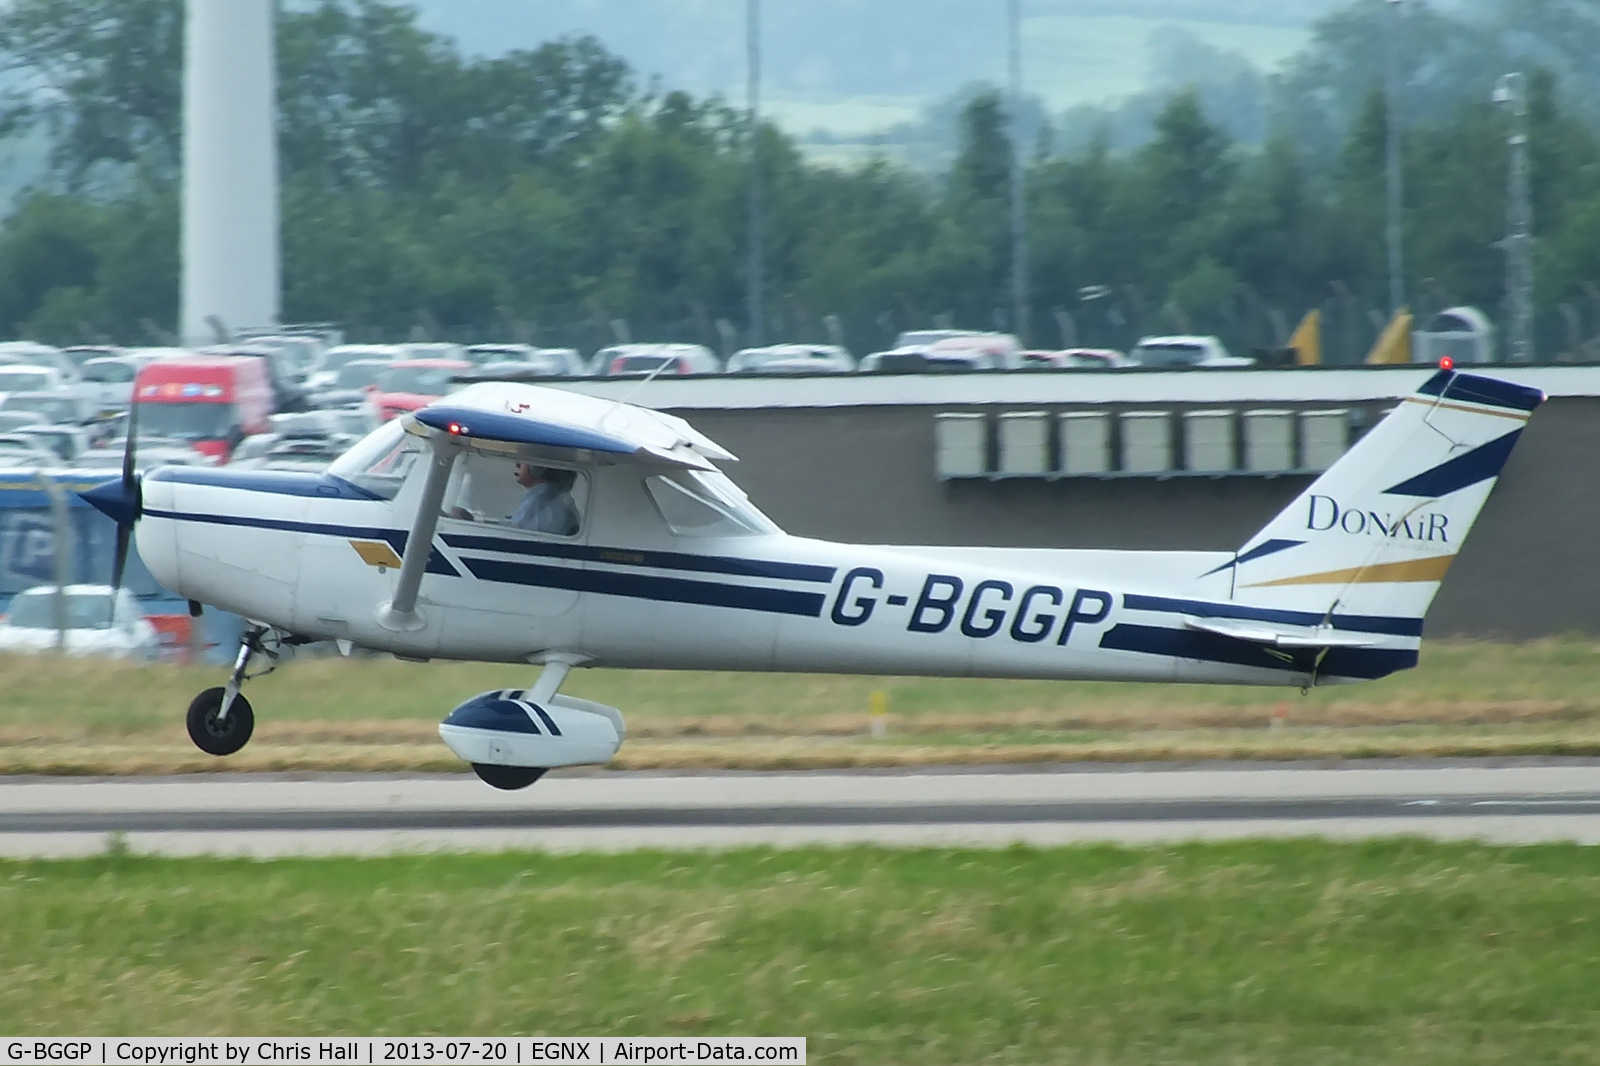 G-BGGP, 1979 Reims F152 C/N 1580, East Midlands Flying School